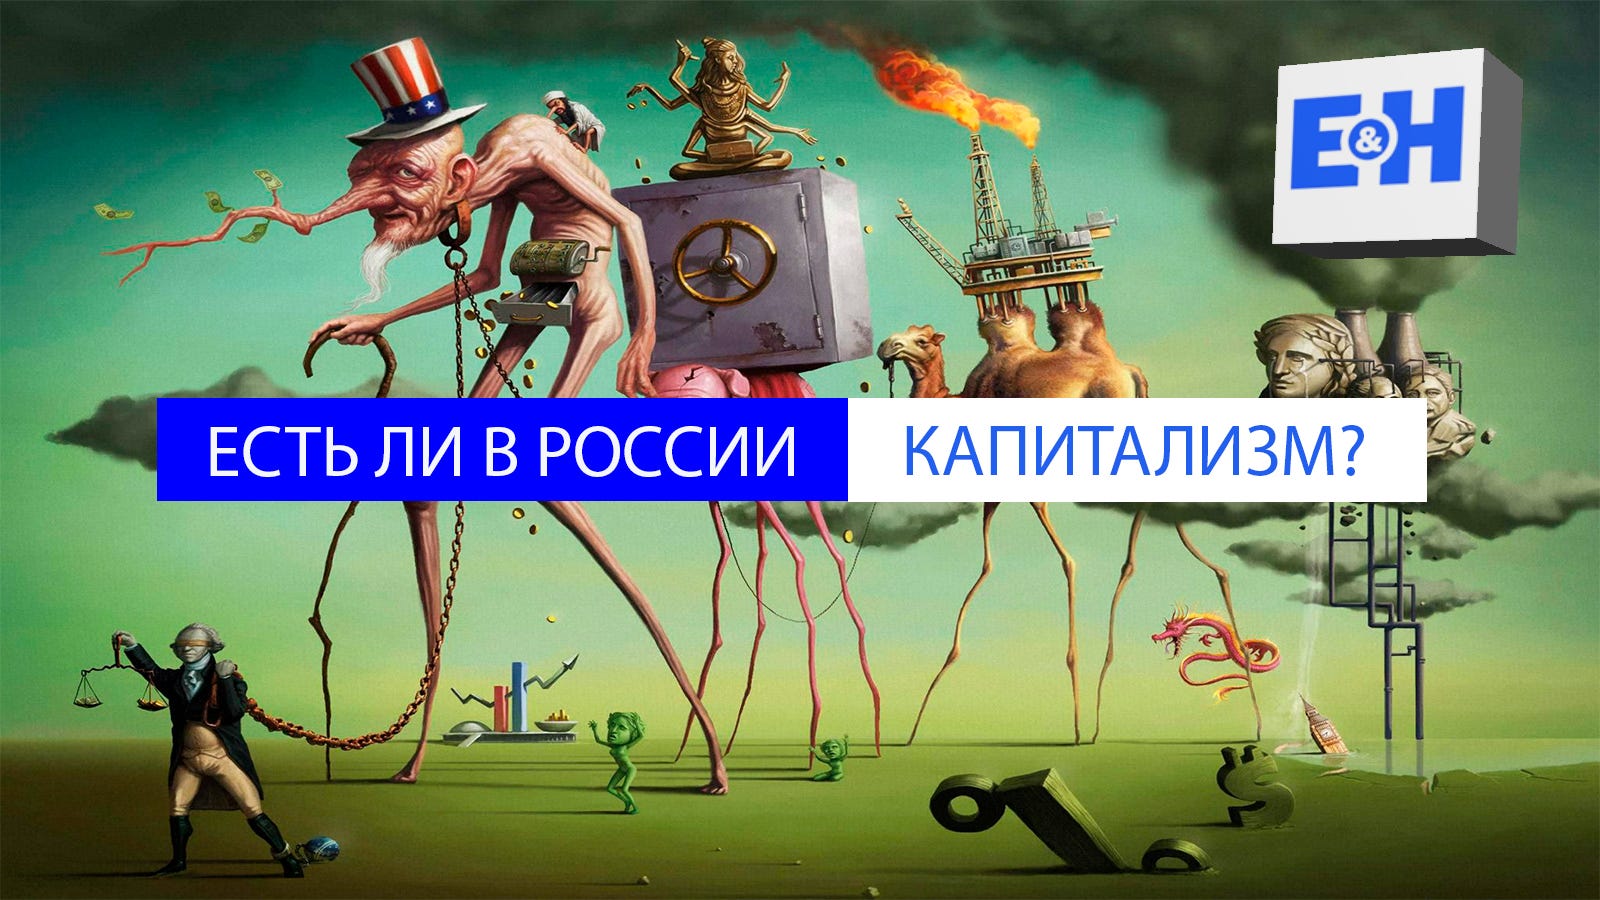 Капитализм в современной России